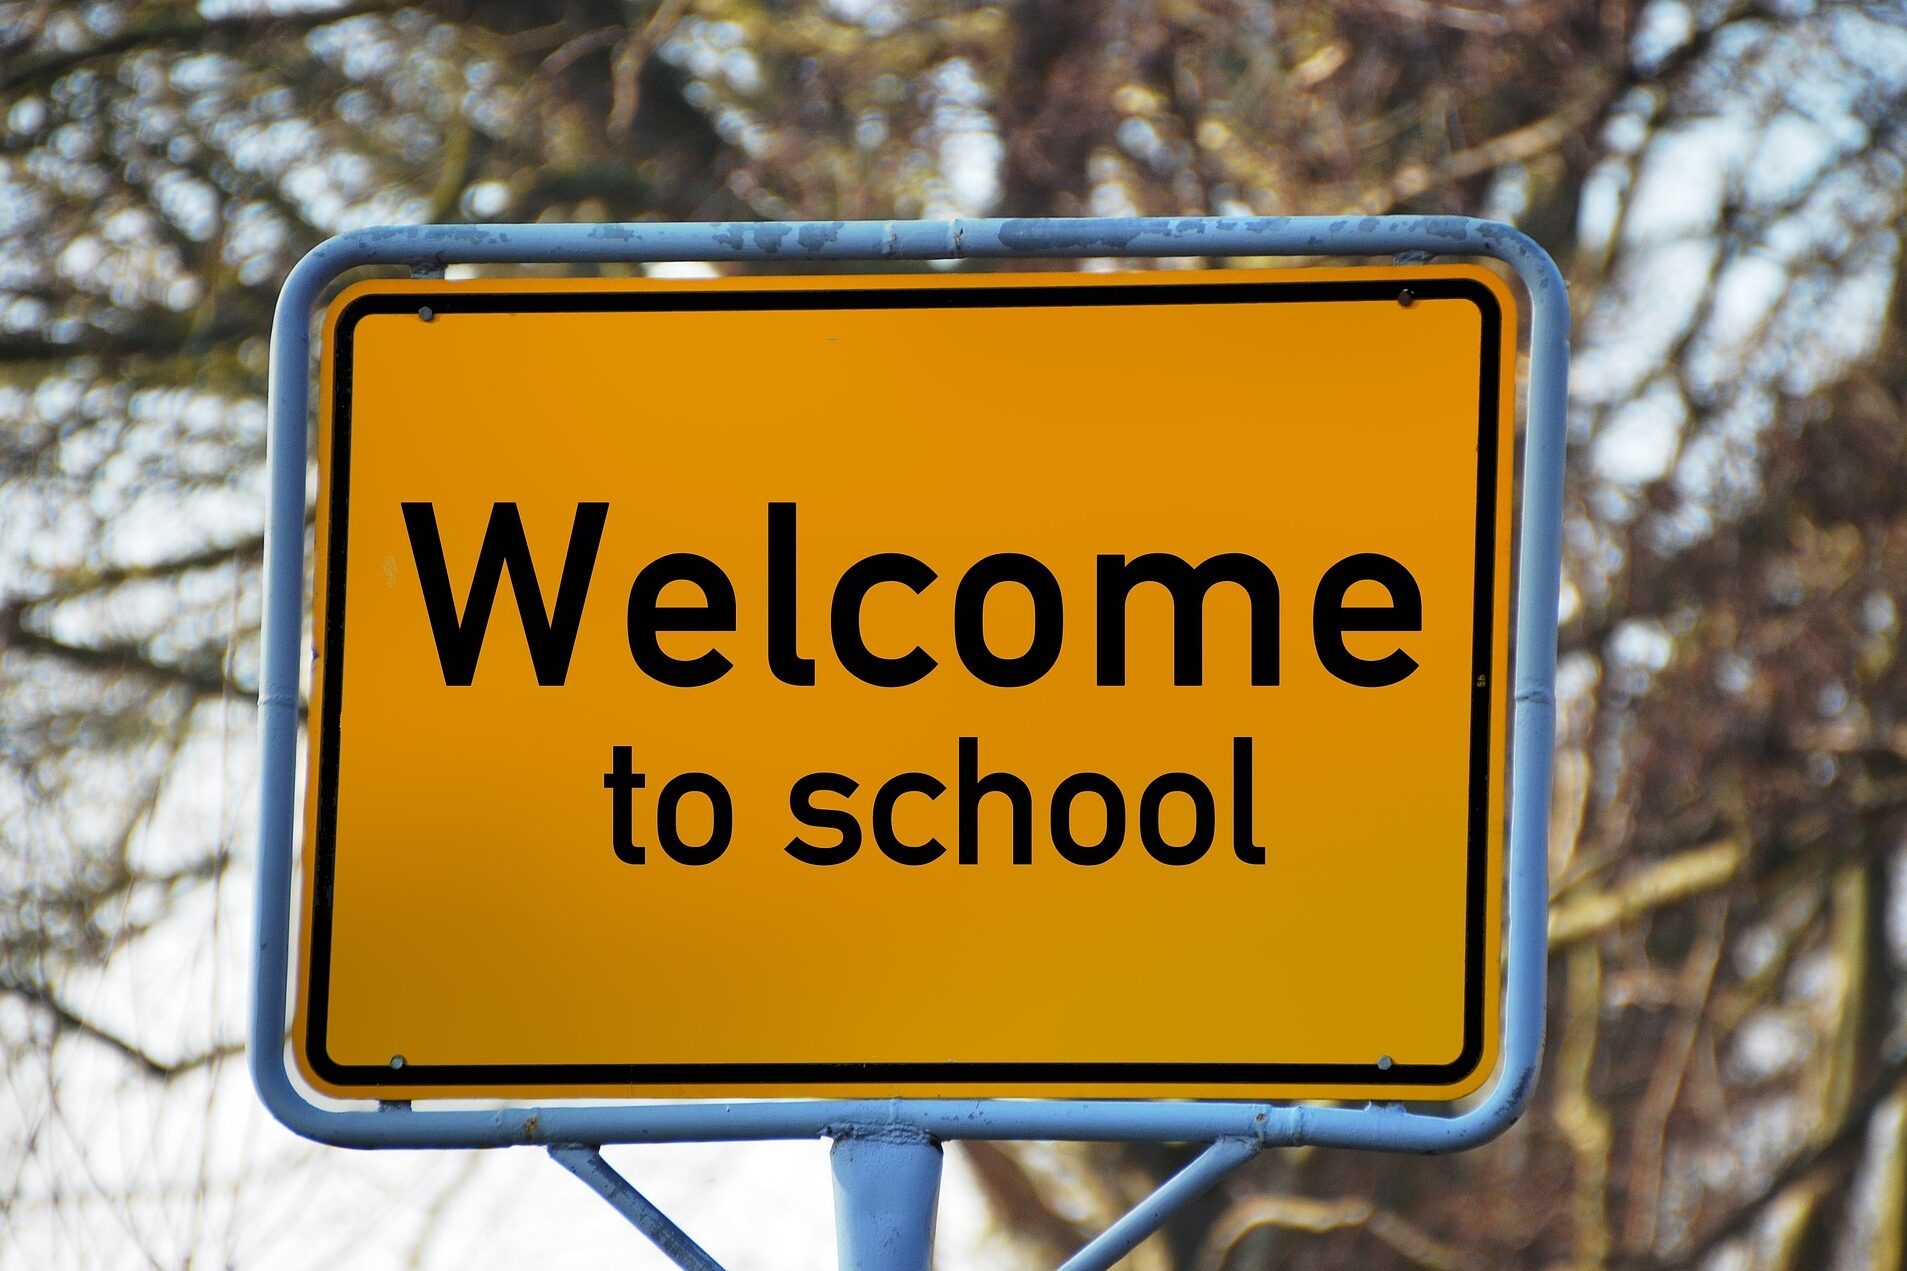 Verkehrsschild mit der Aufschrift "Welcome to school"